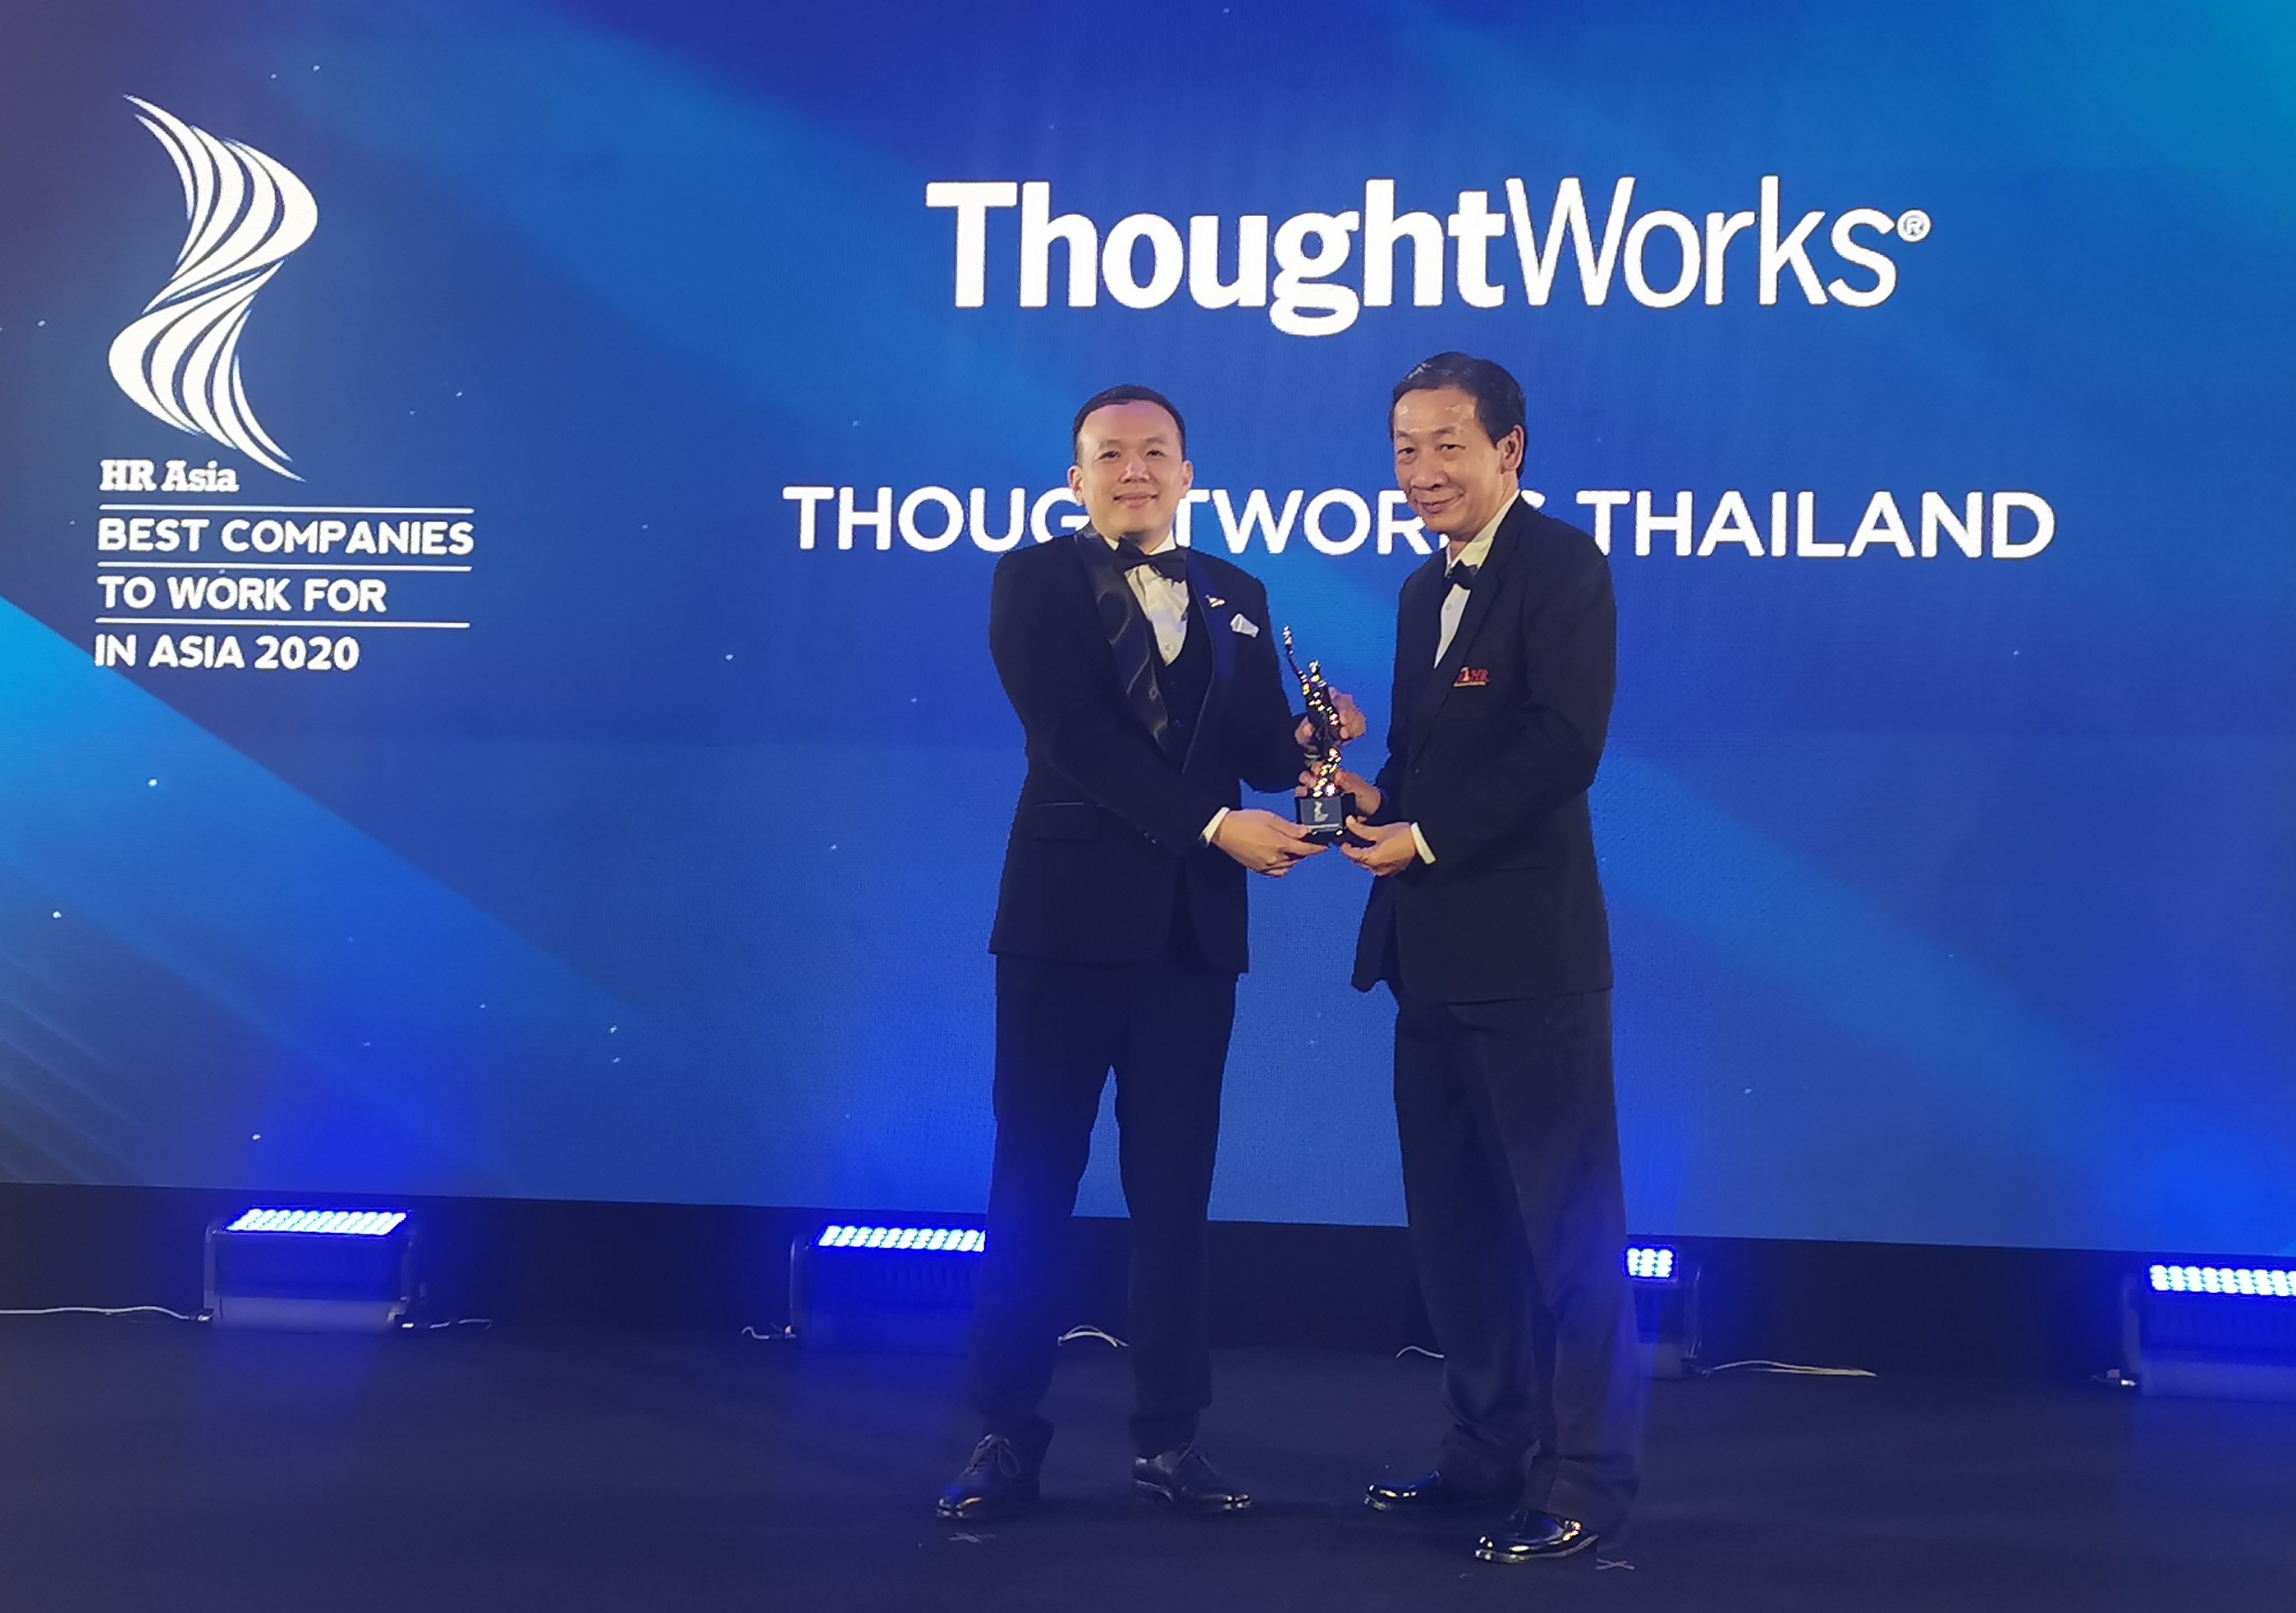 ThoughtWorks ประเทศไทย ได้รับรางวัล บริษัทที่น่าทำงานมากที่สุด ประจำปี 2563 โดย HR Asia